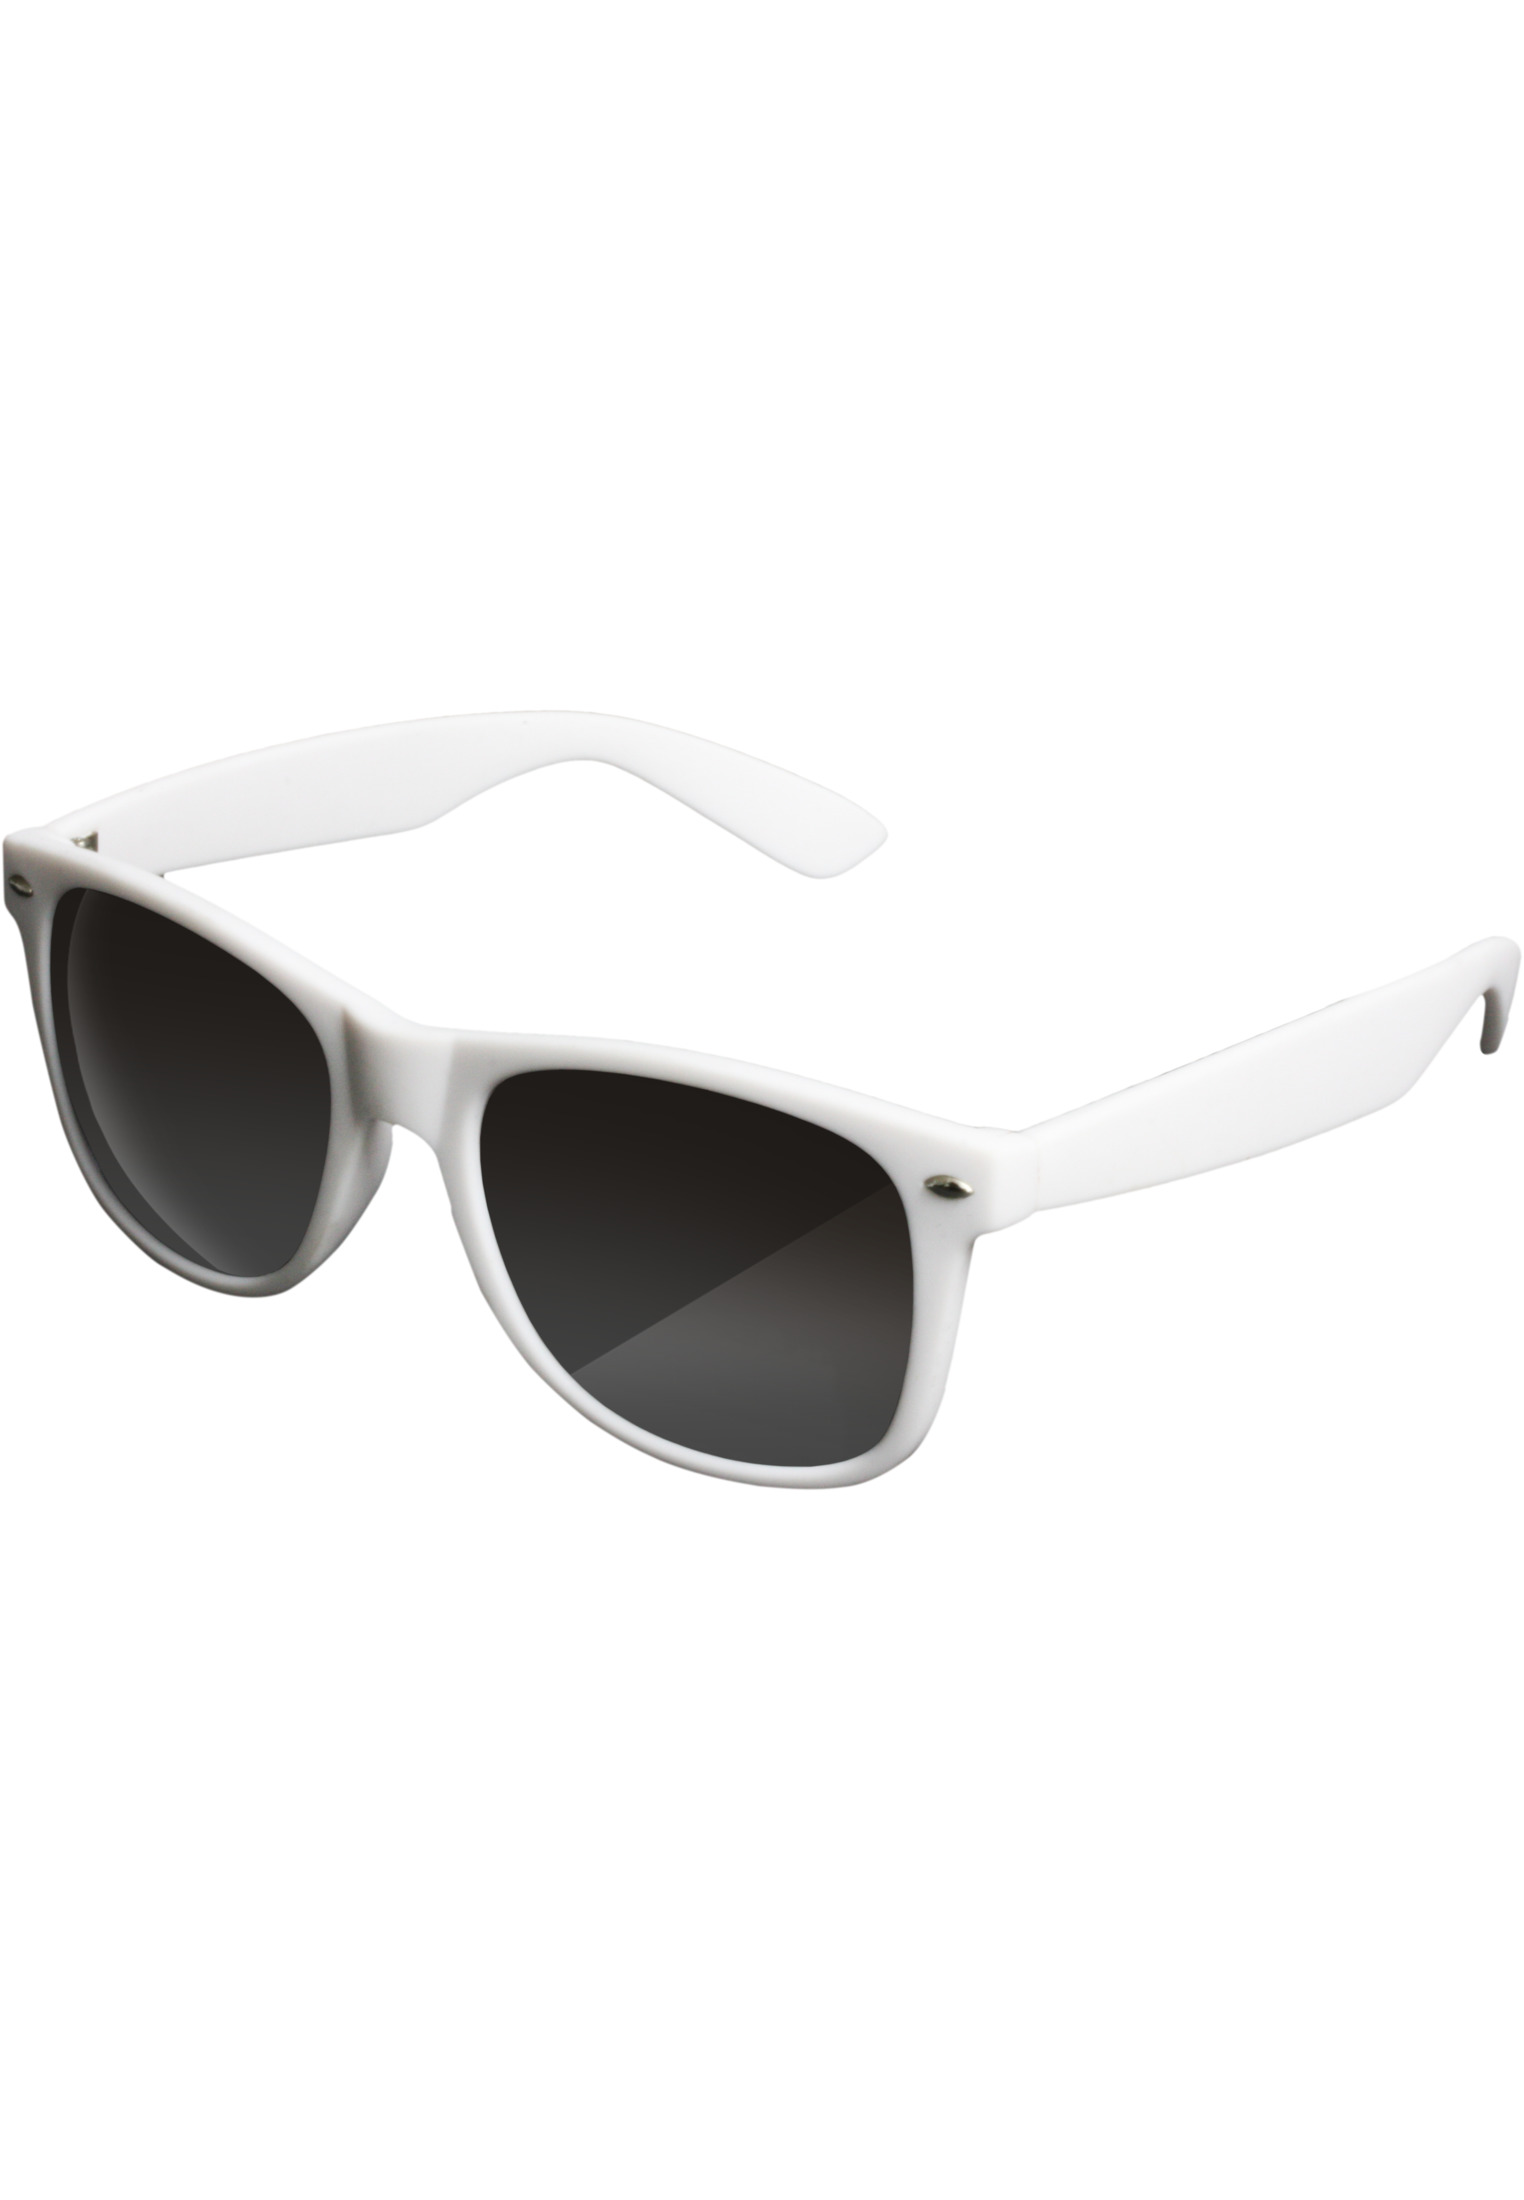 Likoma sunglasses white